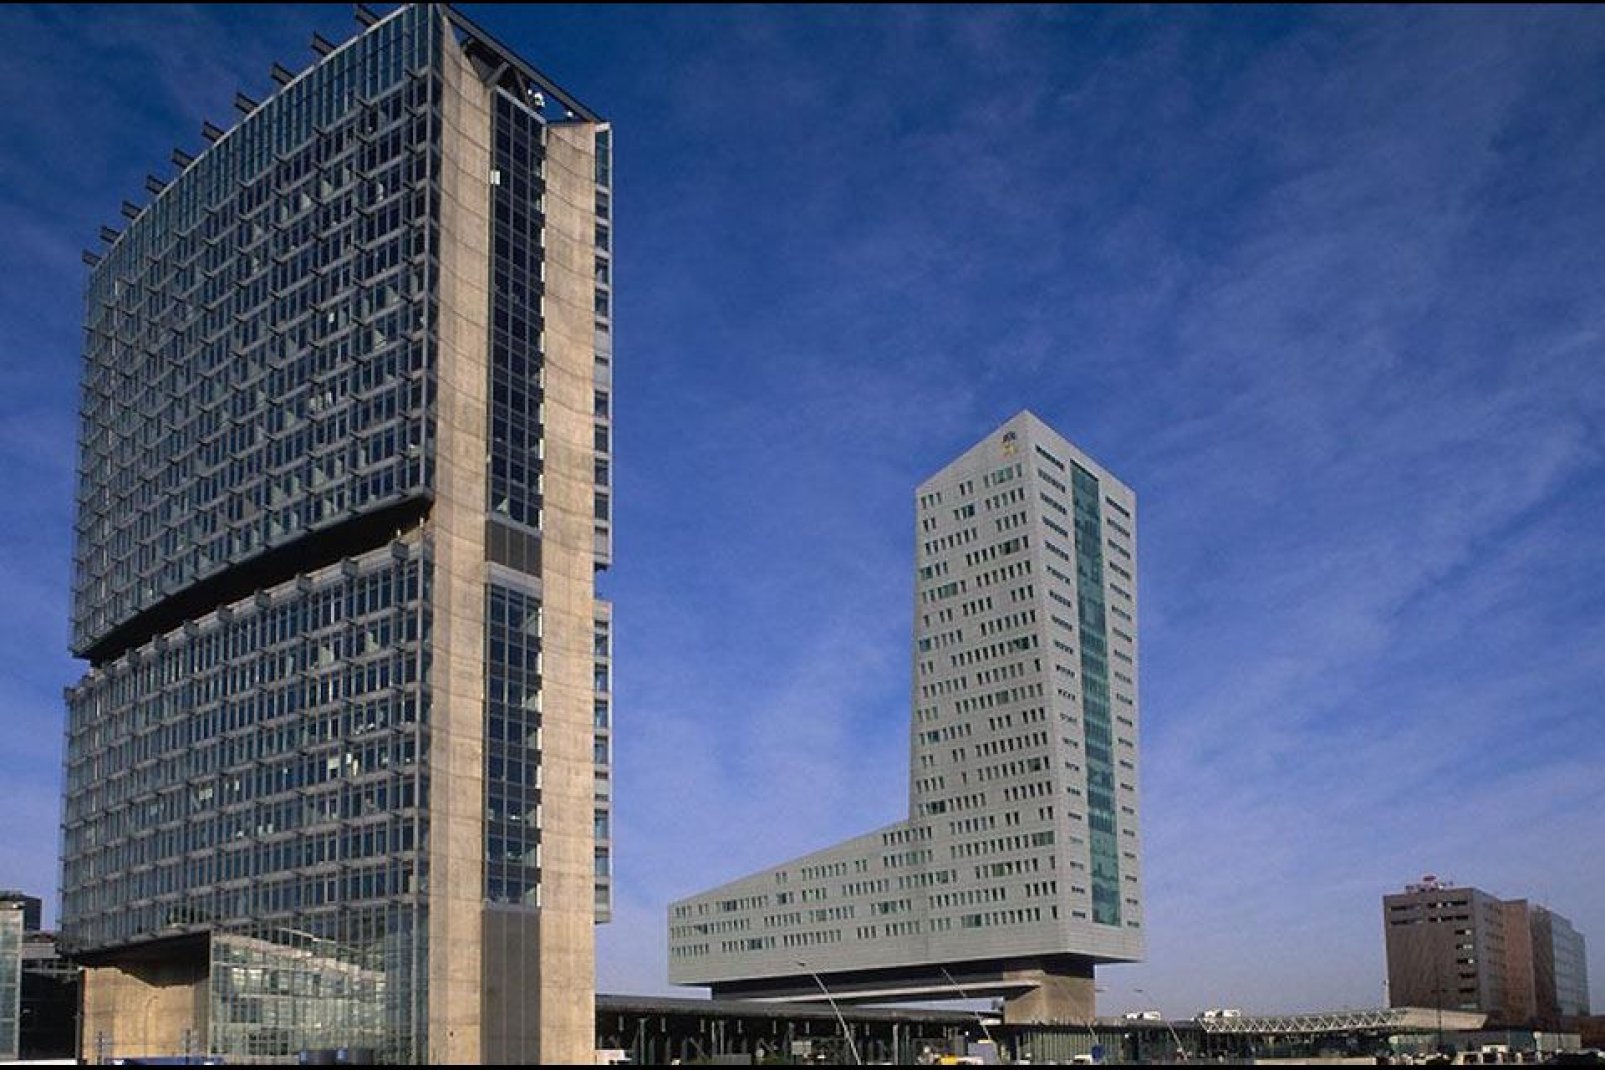 A Lille sono numerosi i progetti di ampliamento, come ad esempio il Grand Projet Urbain (grande progetto urbanistico) che prevede la costruzione di 3.400 nuovi alloggi